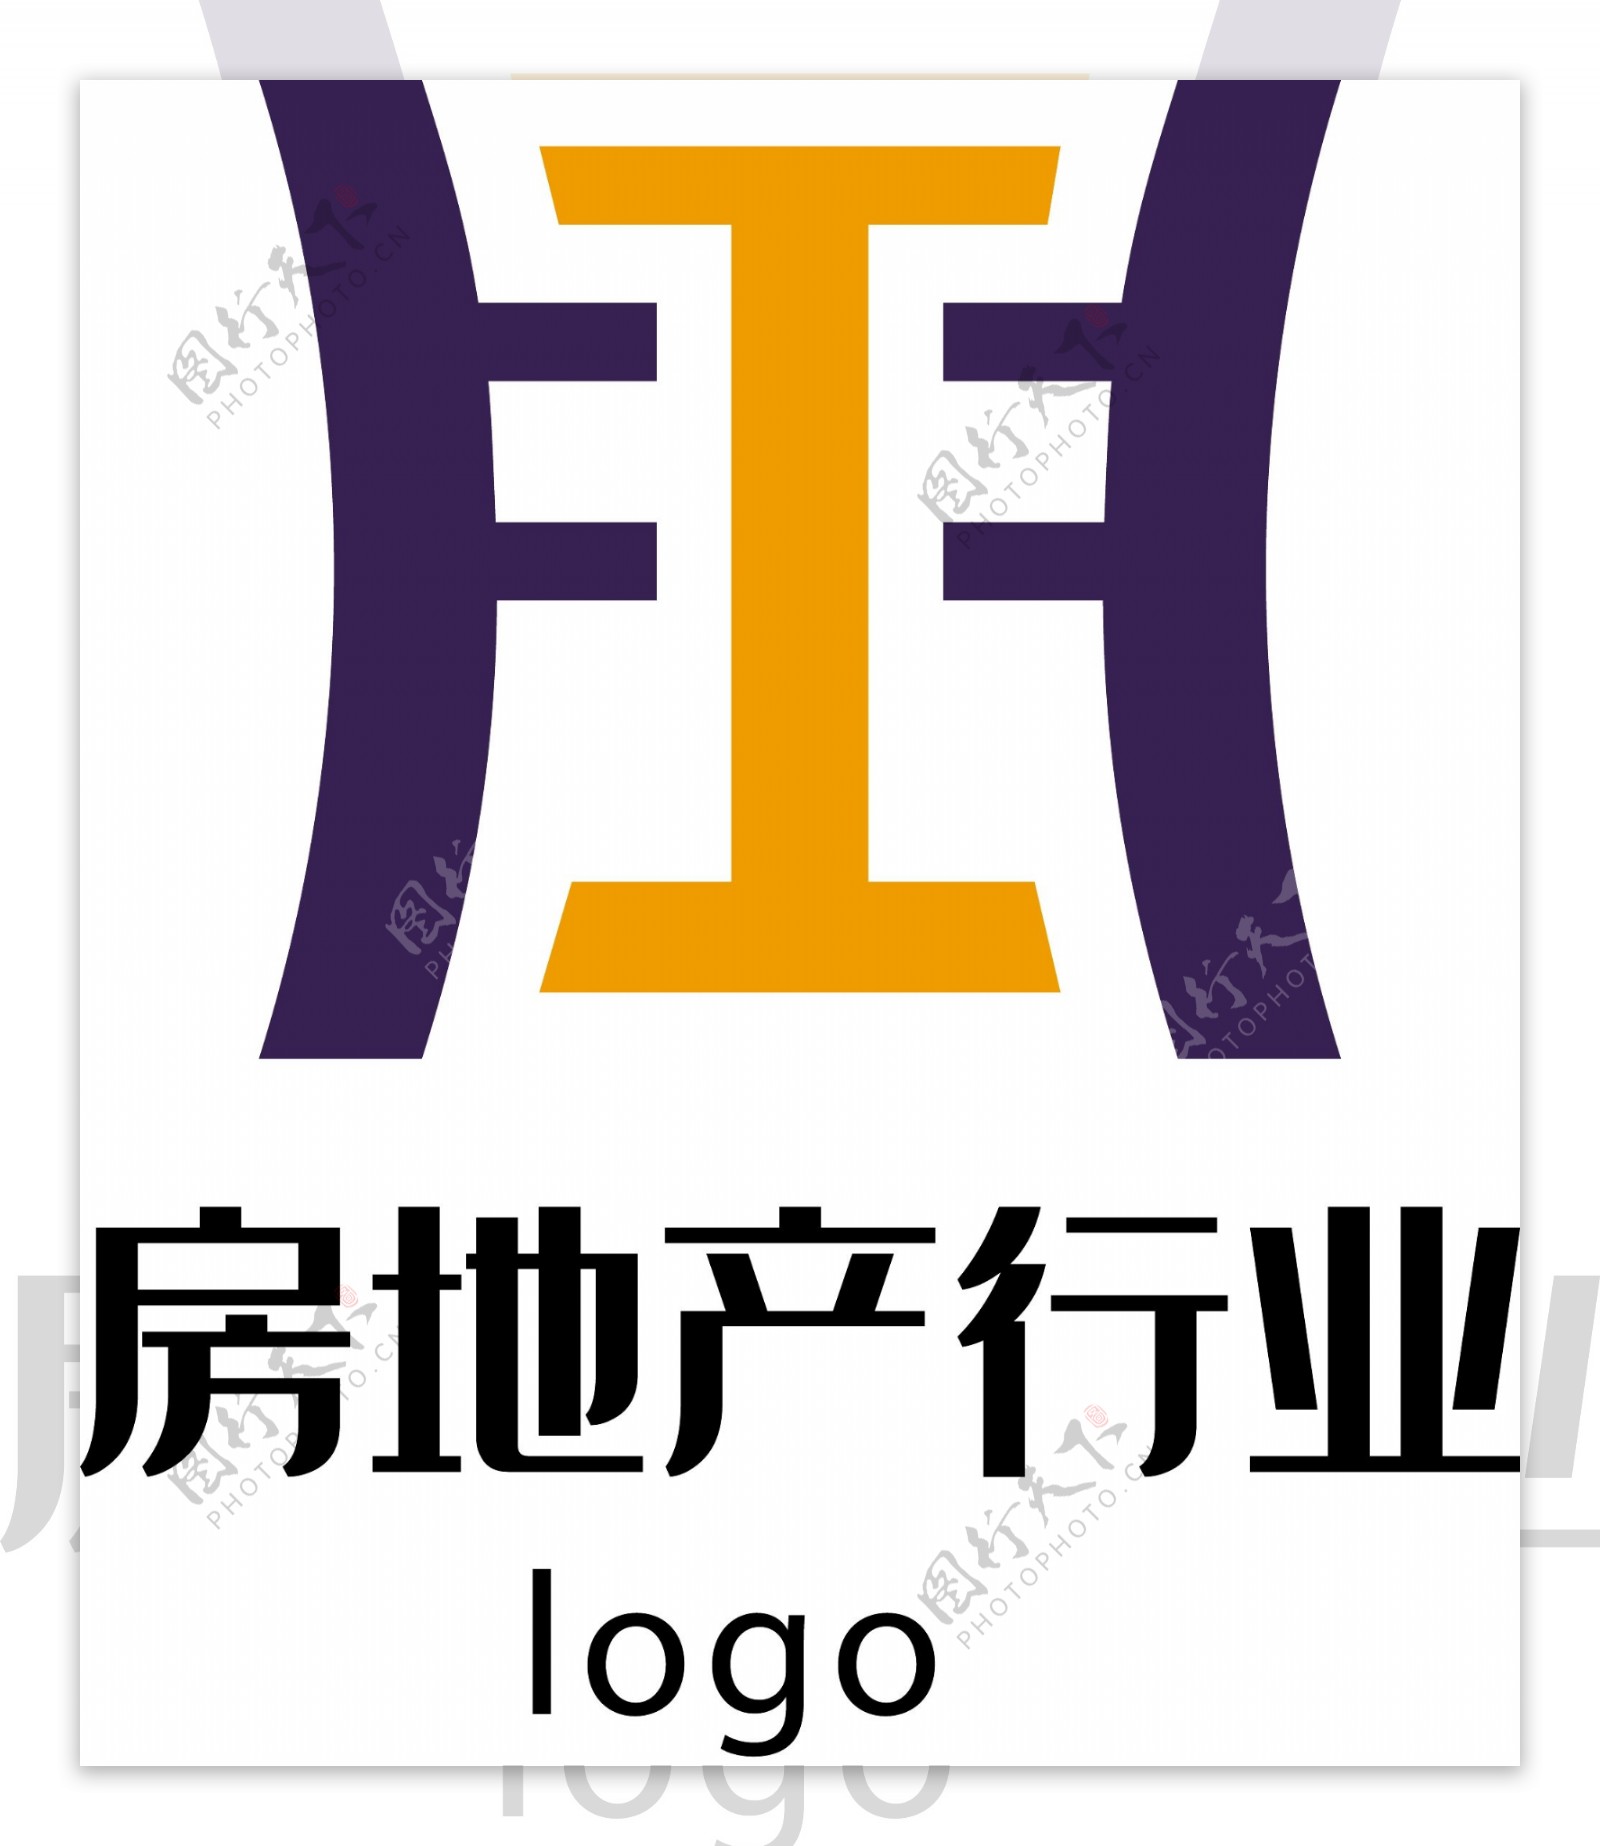 房地产行业工字logo